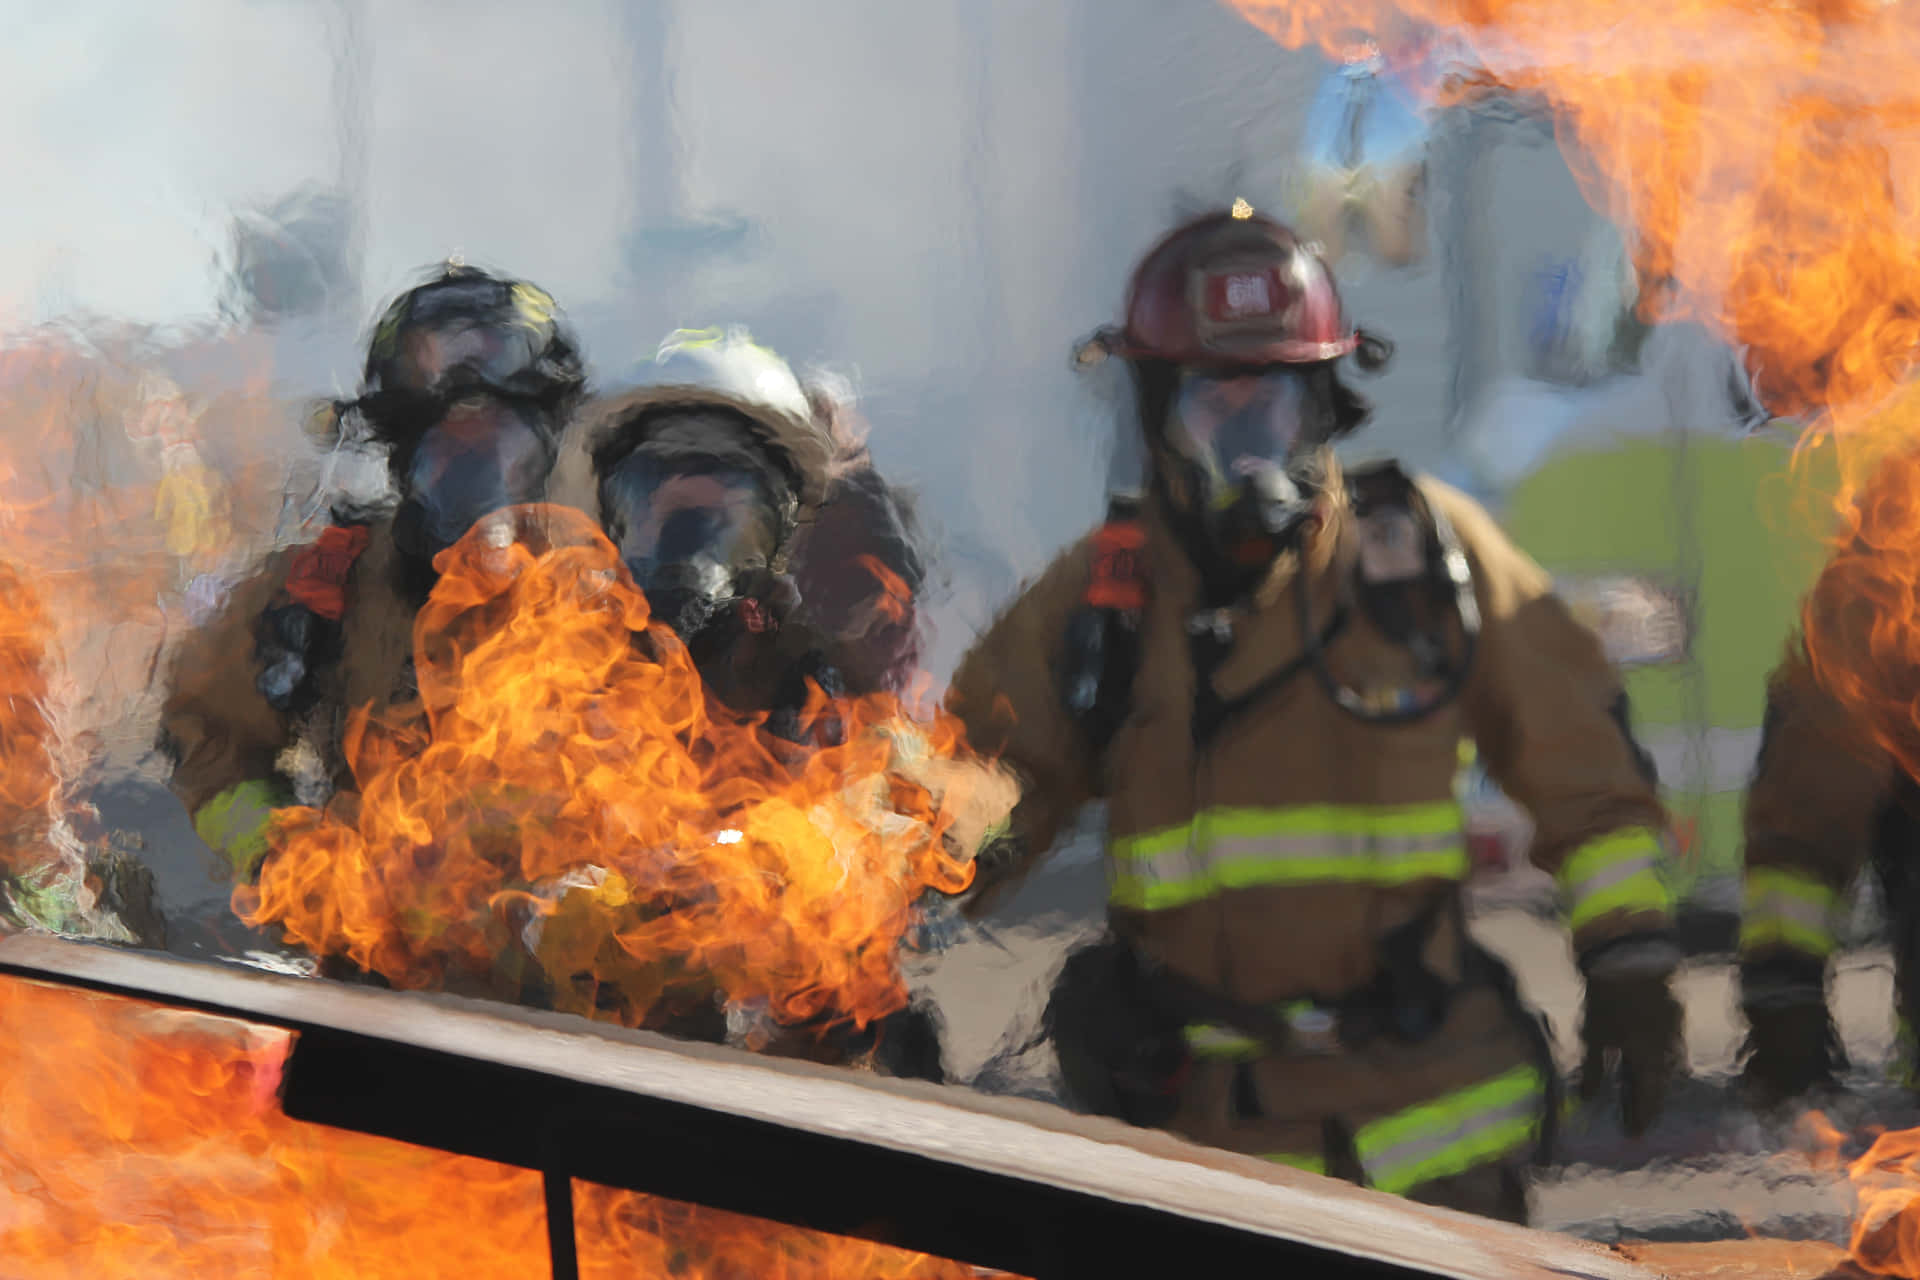 Heltemodi Aktion - Denne Modige Brandmand Risikerer Sit Liv For At Redde Andre.